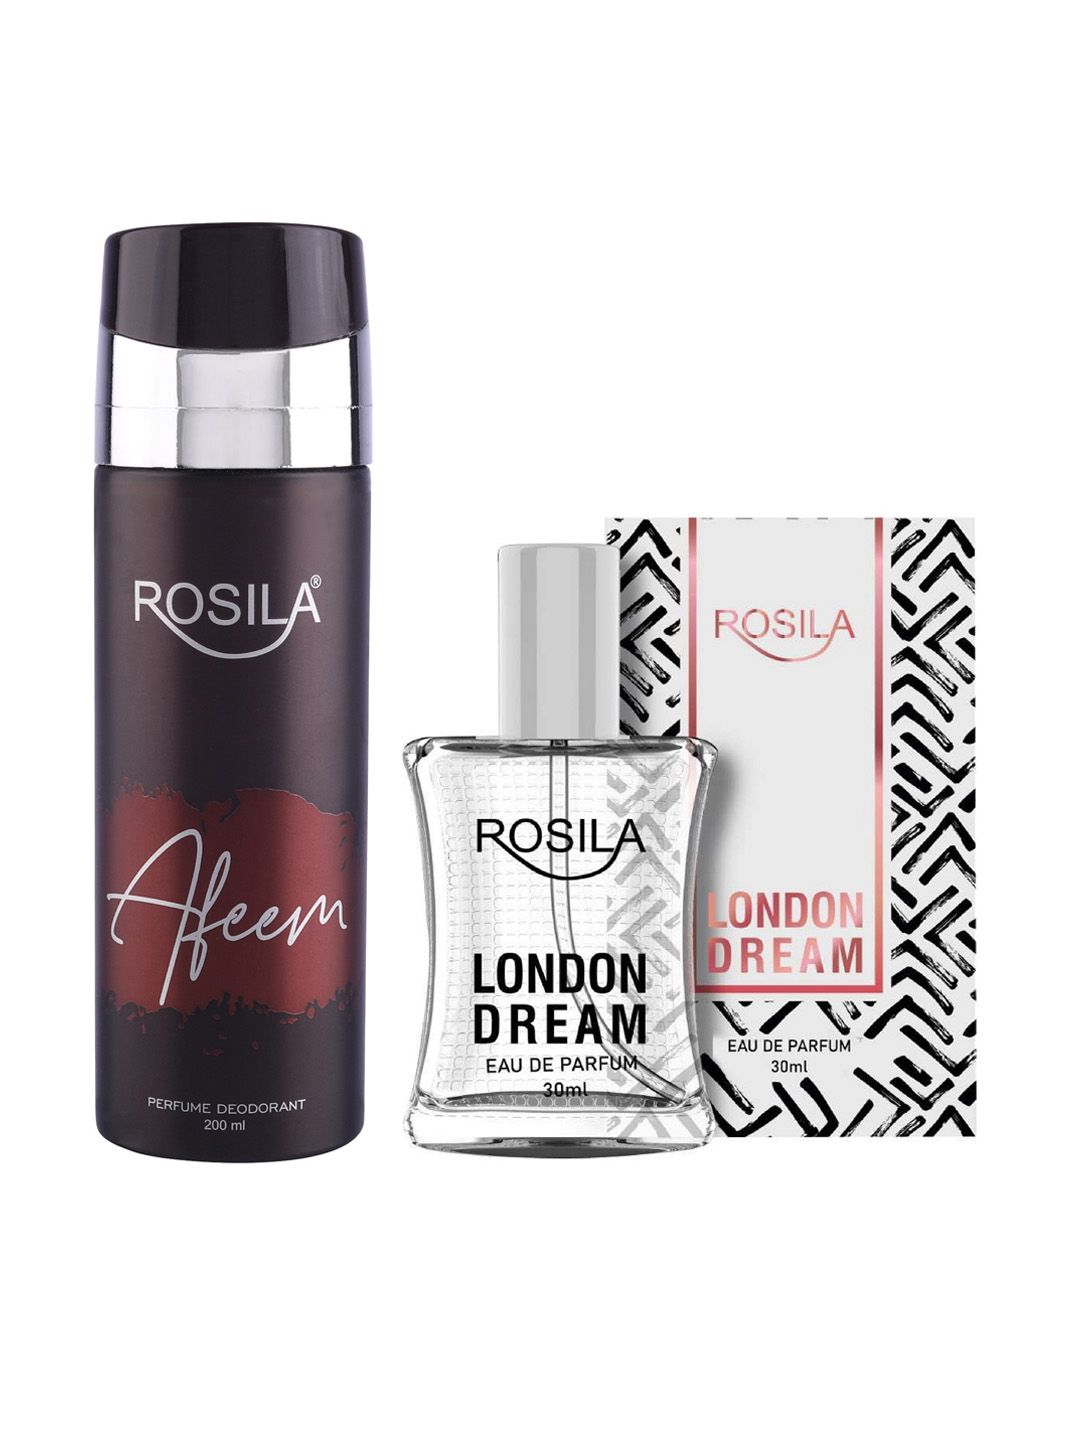 ROSILA Set of London Dream Eau De Parfum 30 ml & Afeem Deodorant 200 ml Price in India